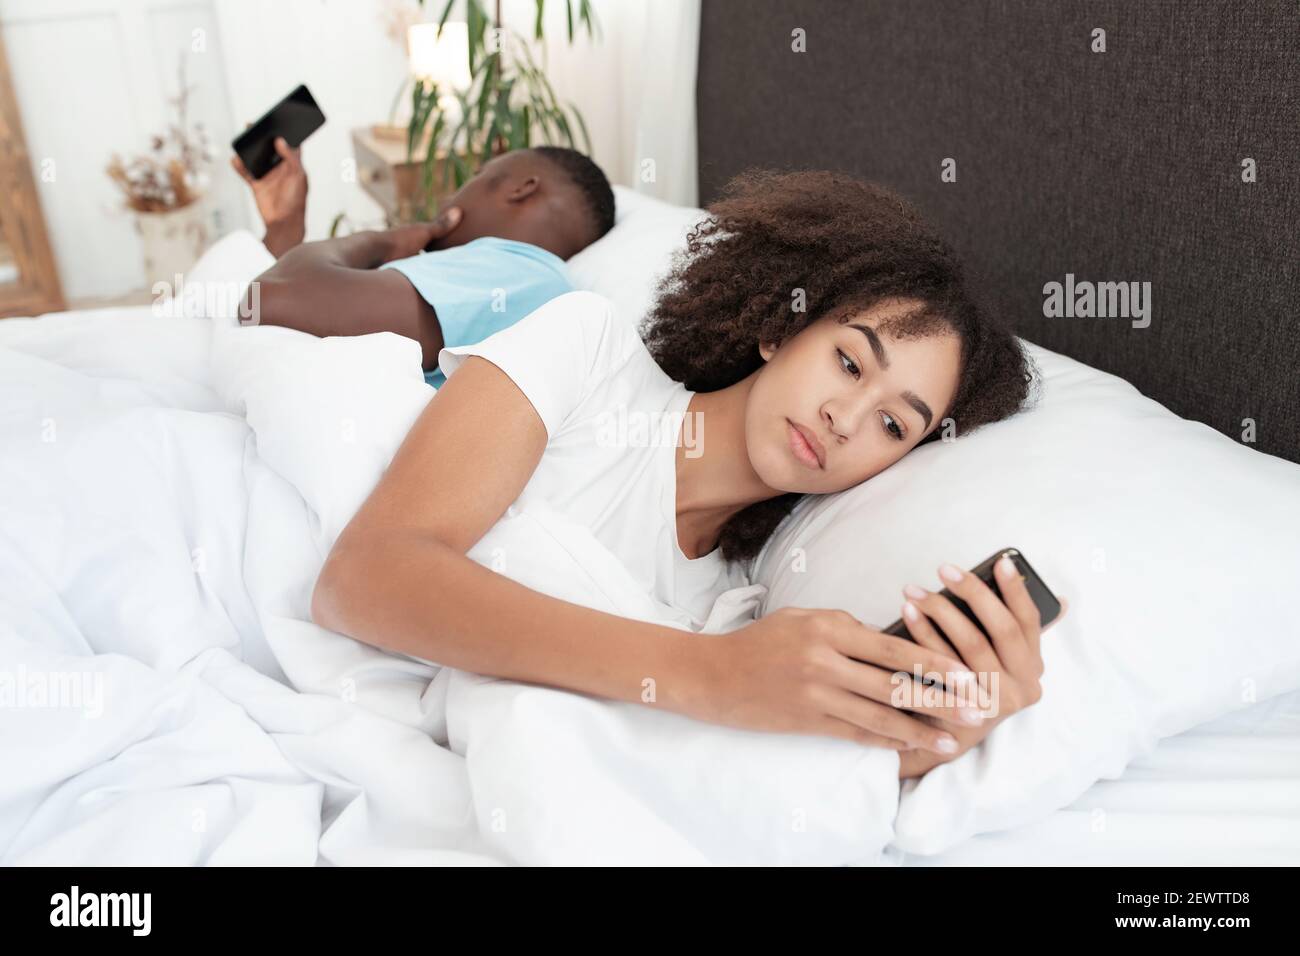 Giorno fuori a letto, dipendenza di gadget e problemi di coppia a causa dei social media online Foto Stock